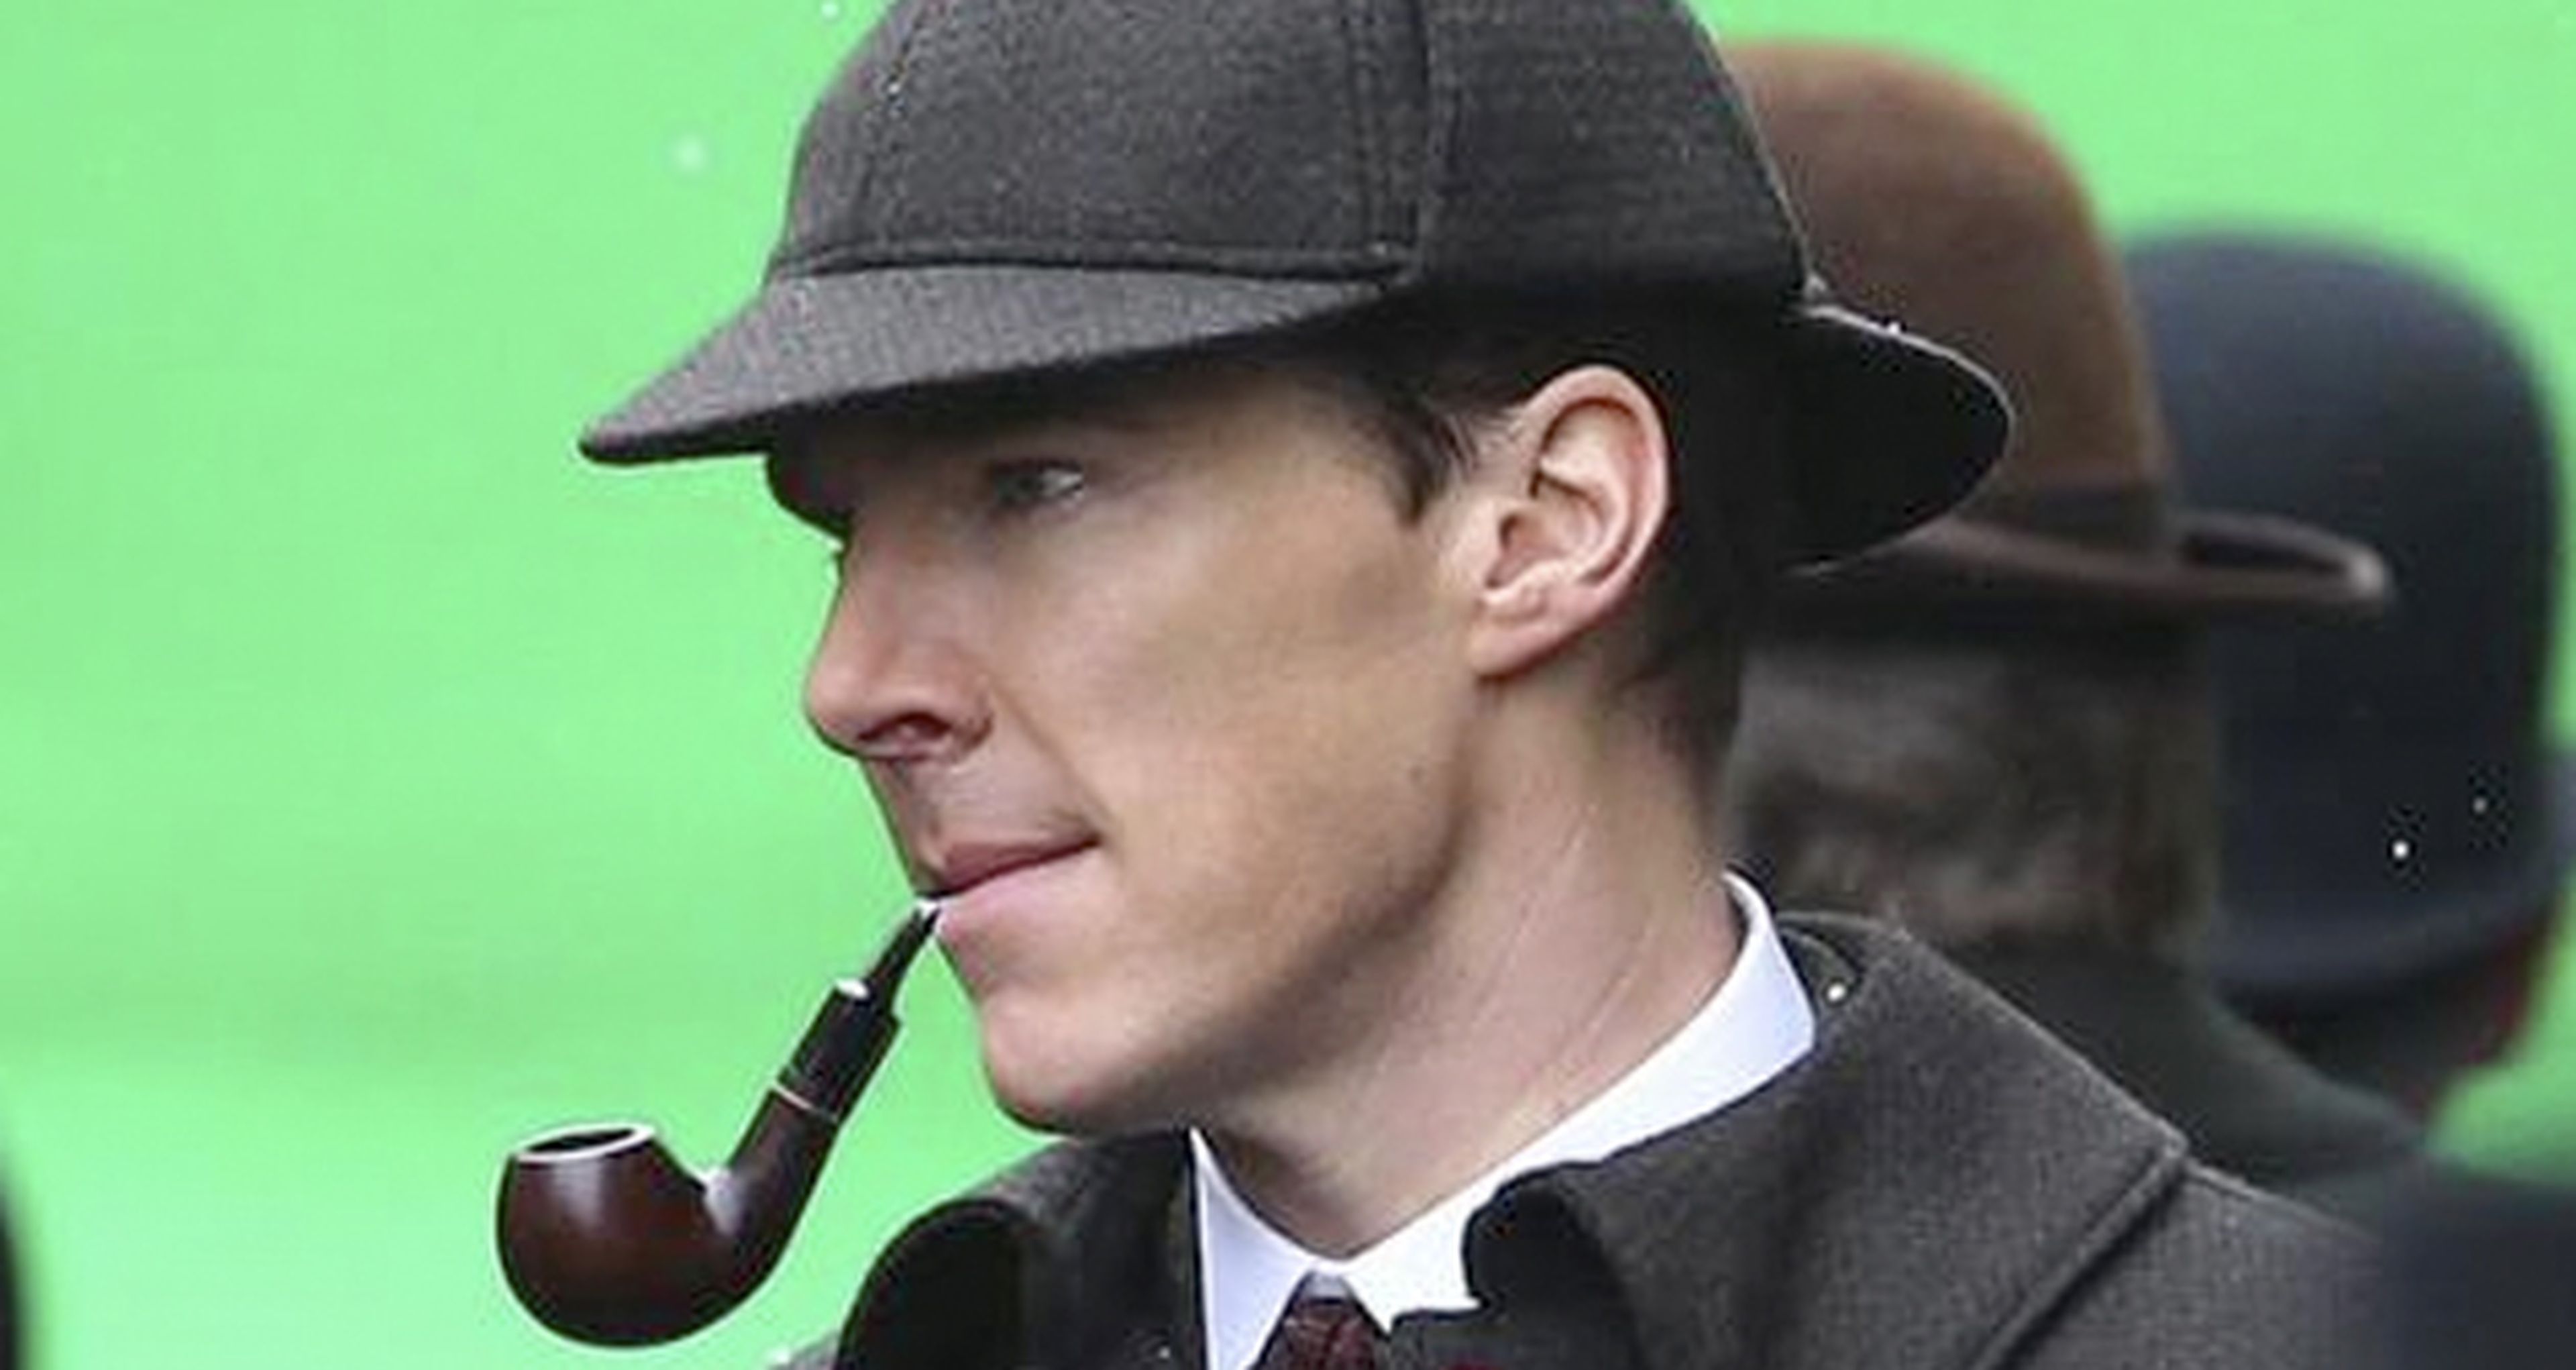 El especial de Navidad de Sherlock muestra a Cumberbatch y Freeman en nuevas imágenes